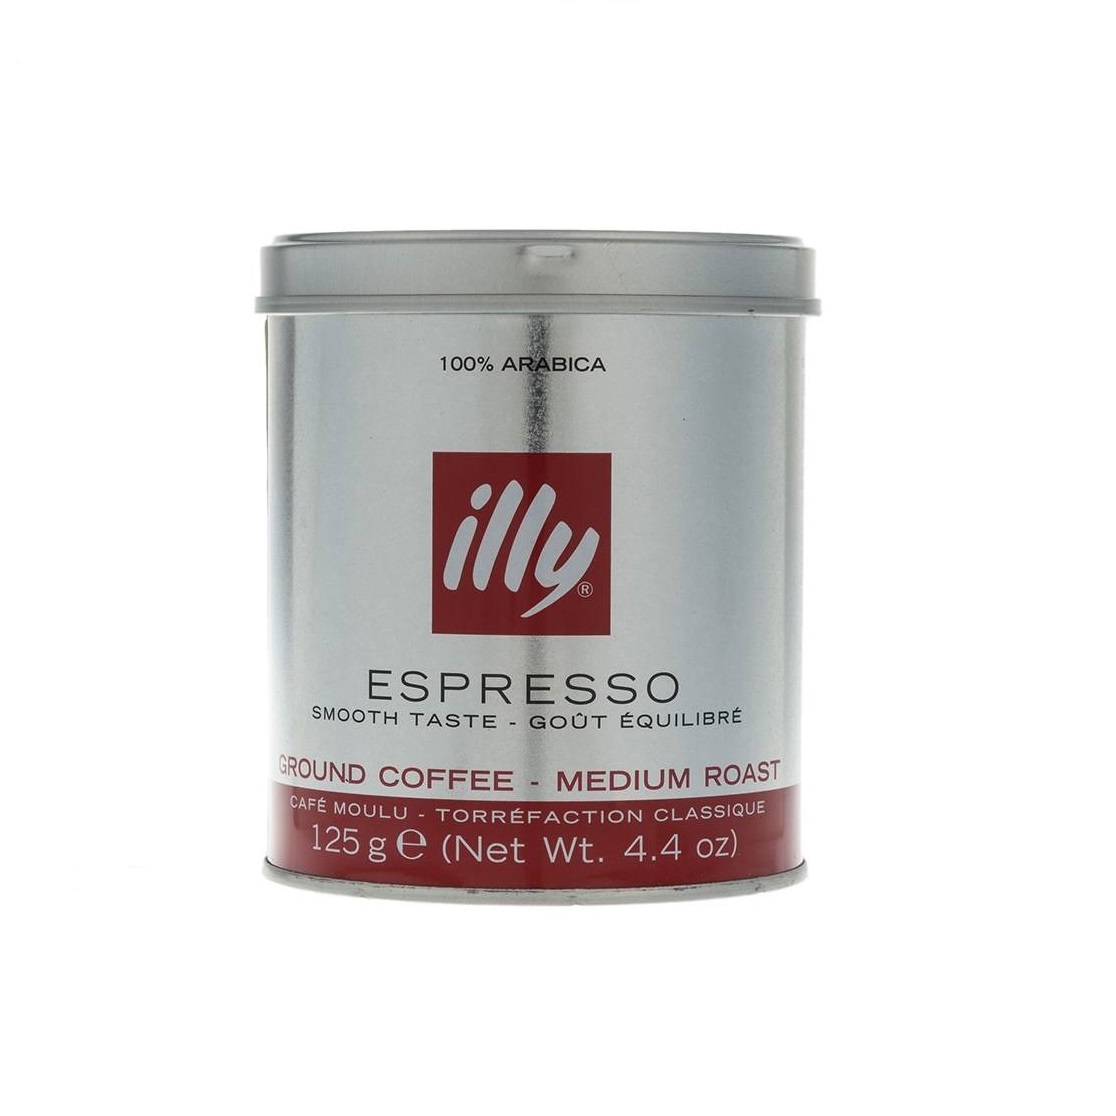 پودر قهوه مدیوم رست اسپرسو ایلی مقدار 125 گرم